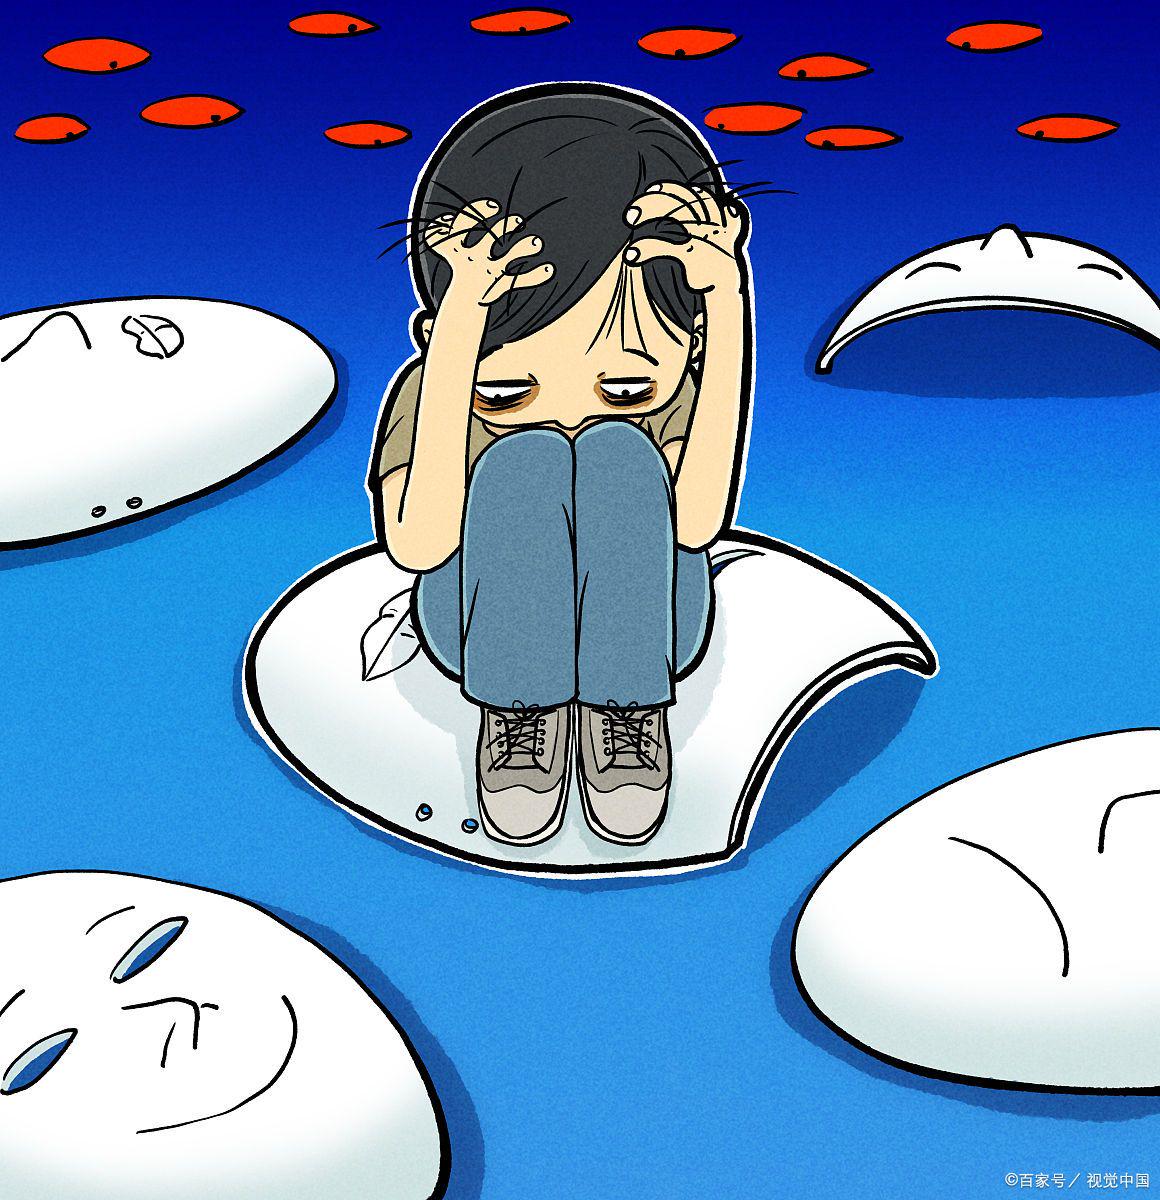 歌手李玟因抑郁症离世,抑郁症有多可怕你知道吗?